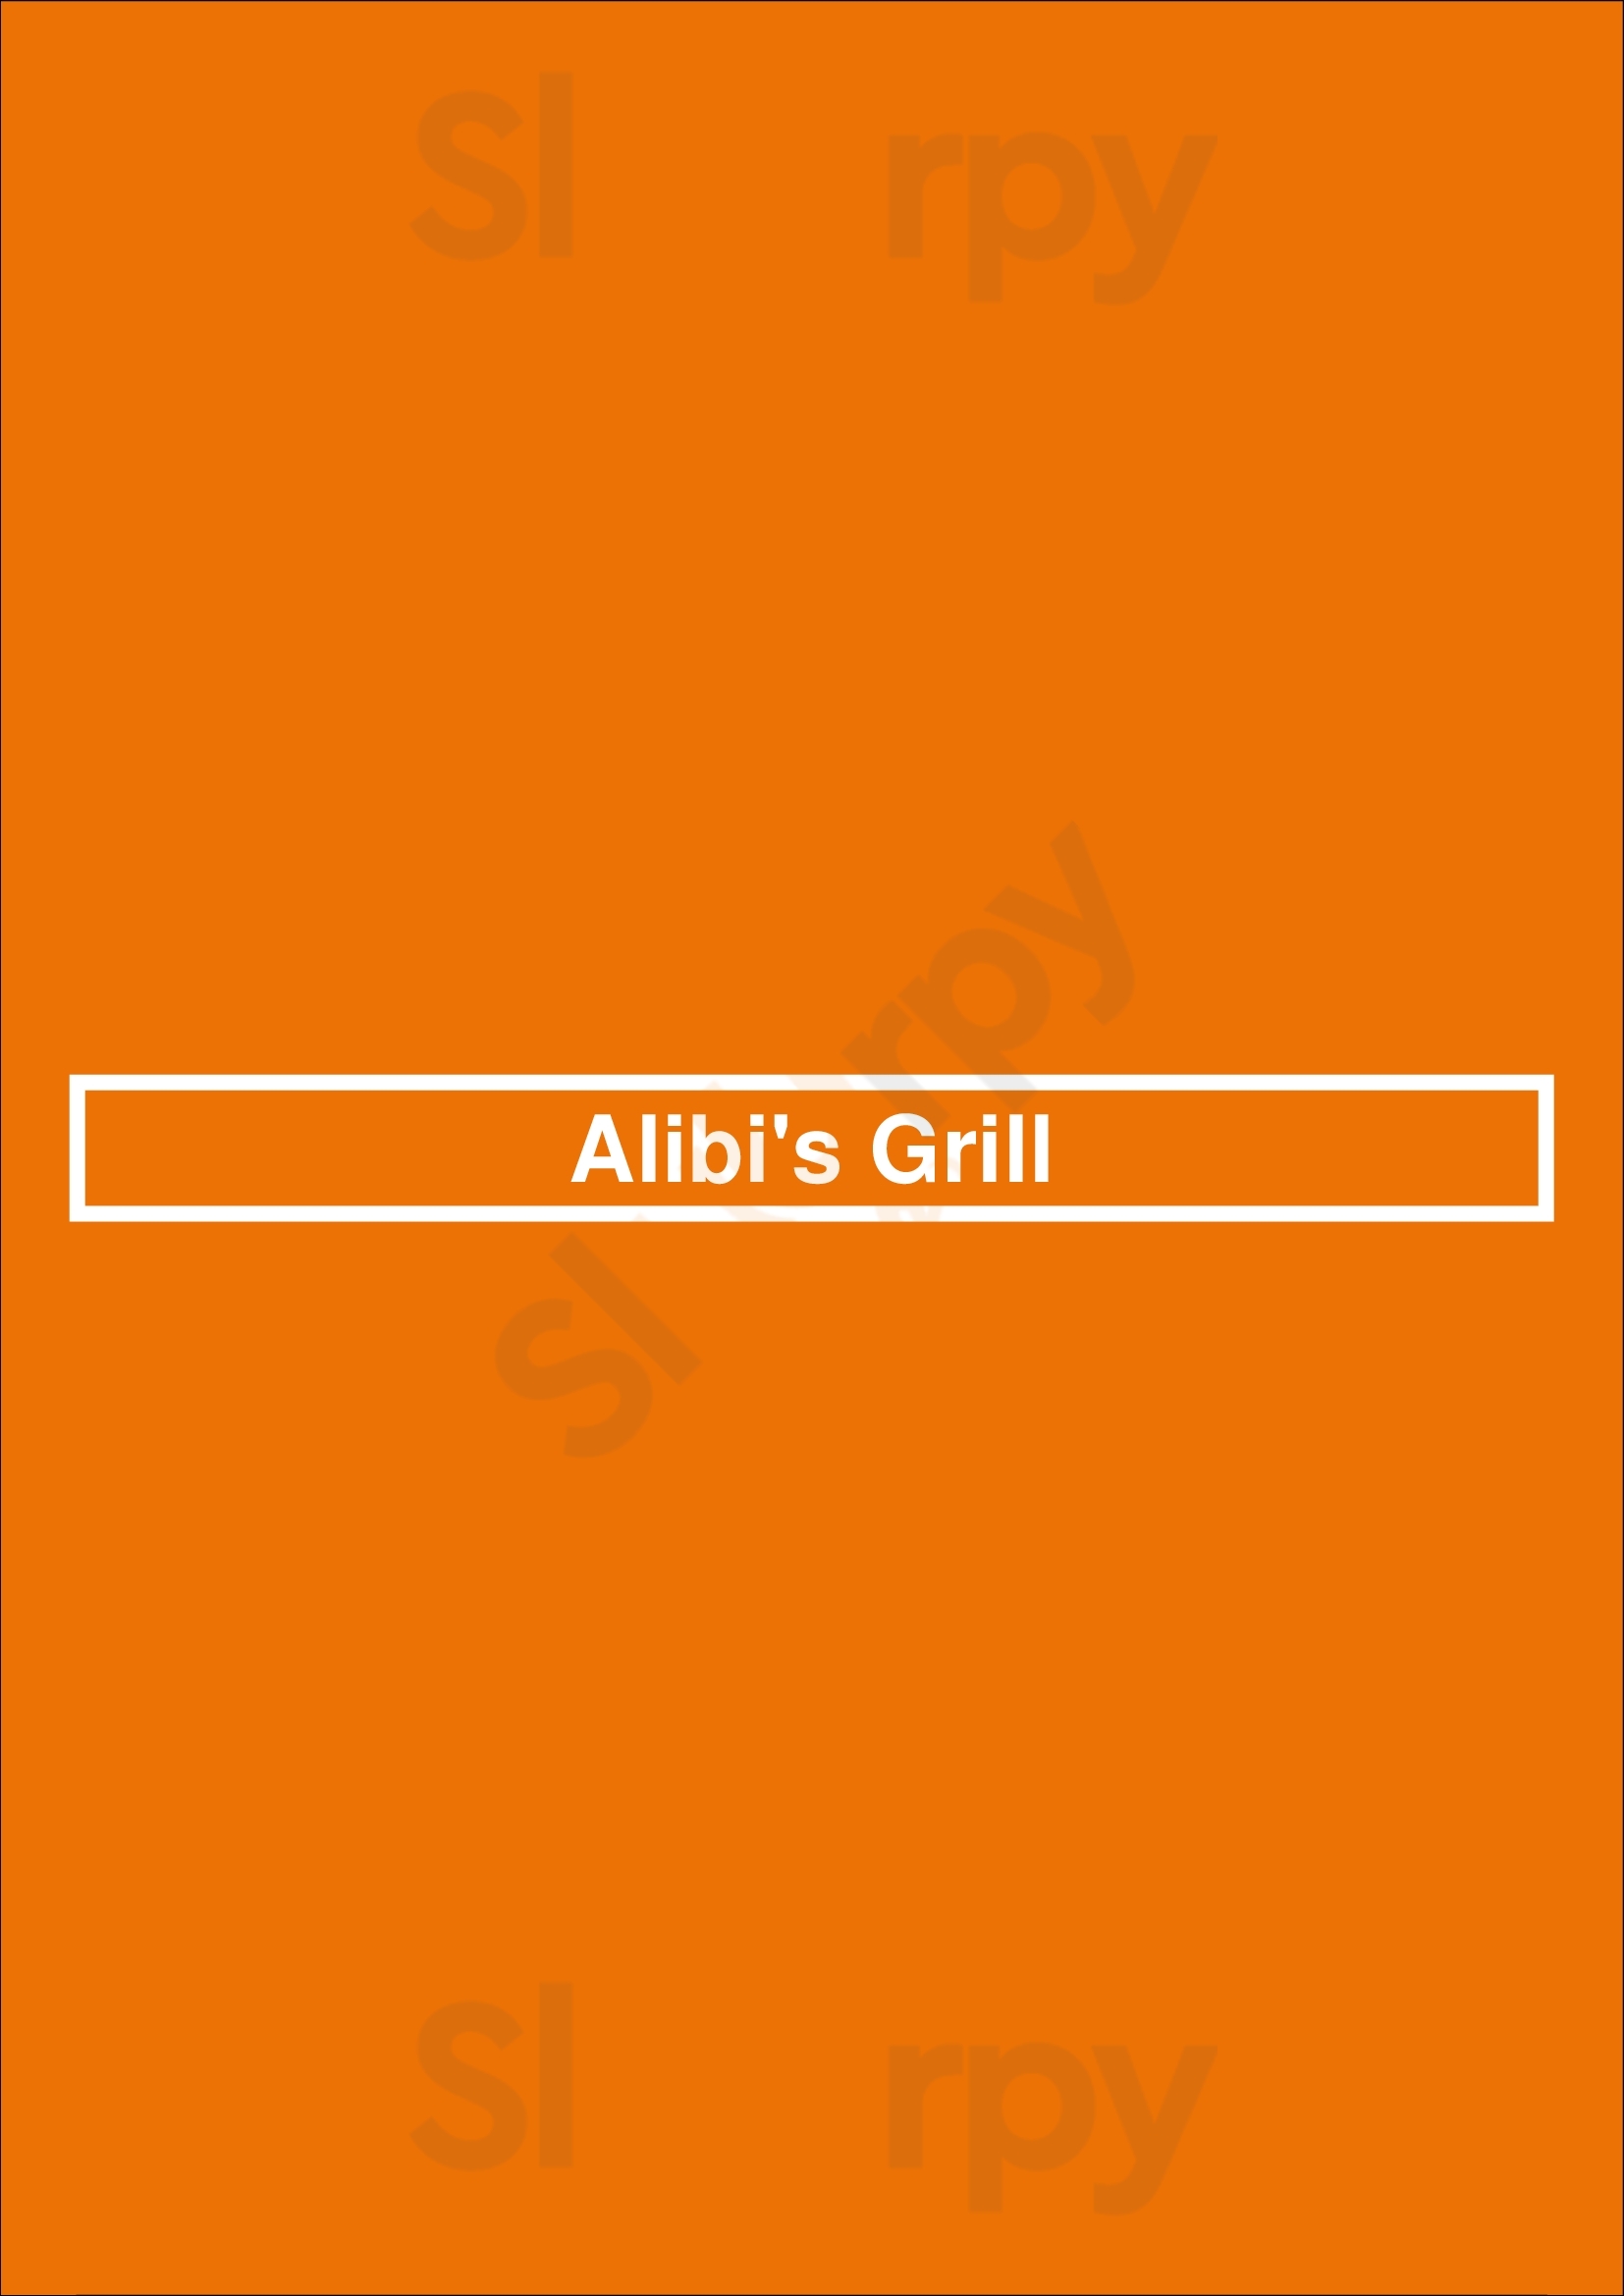 Alibi's Grill Indianapolis Menu - 1